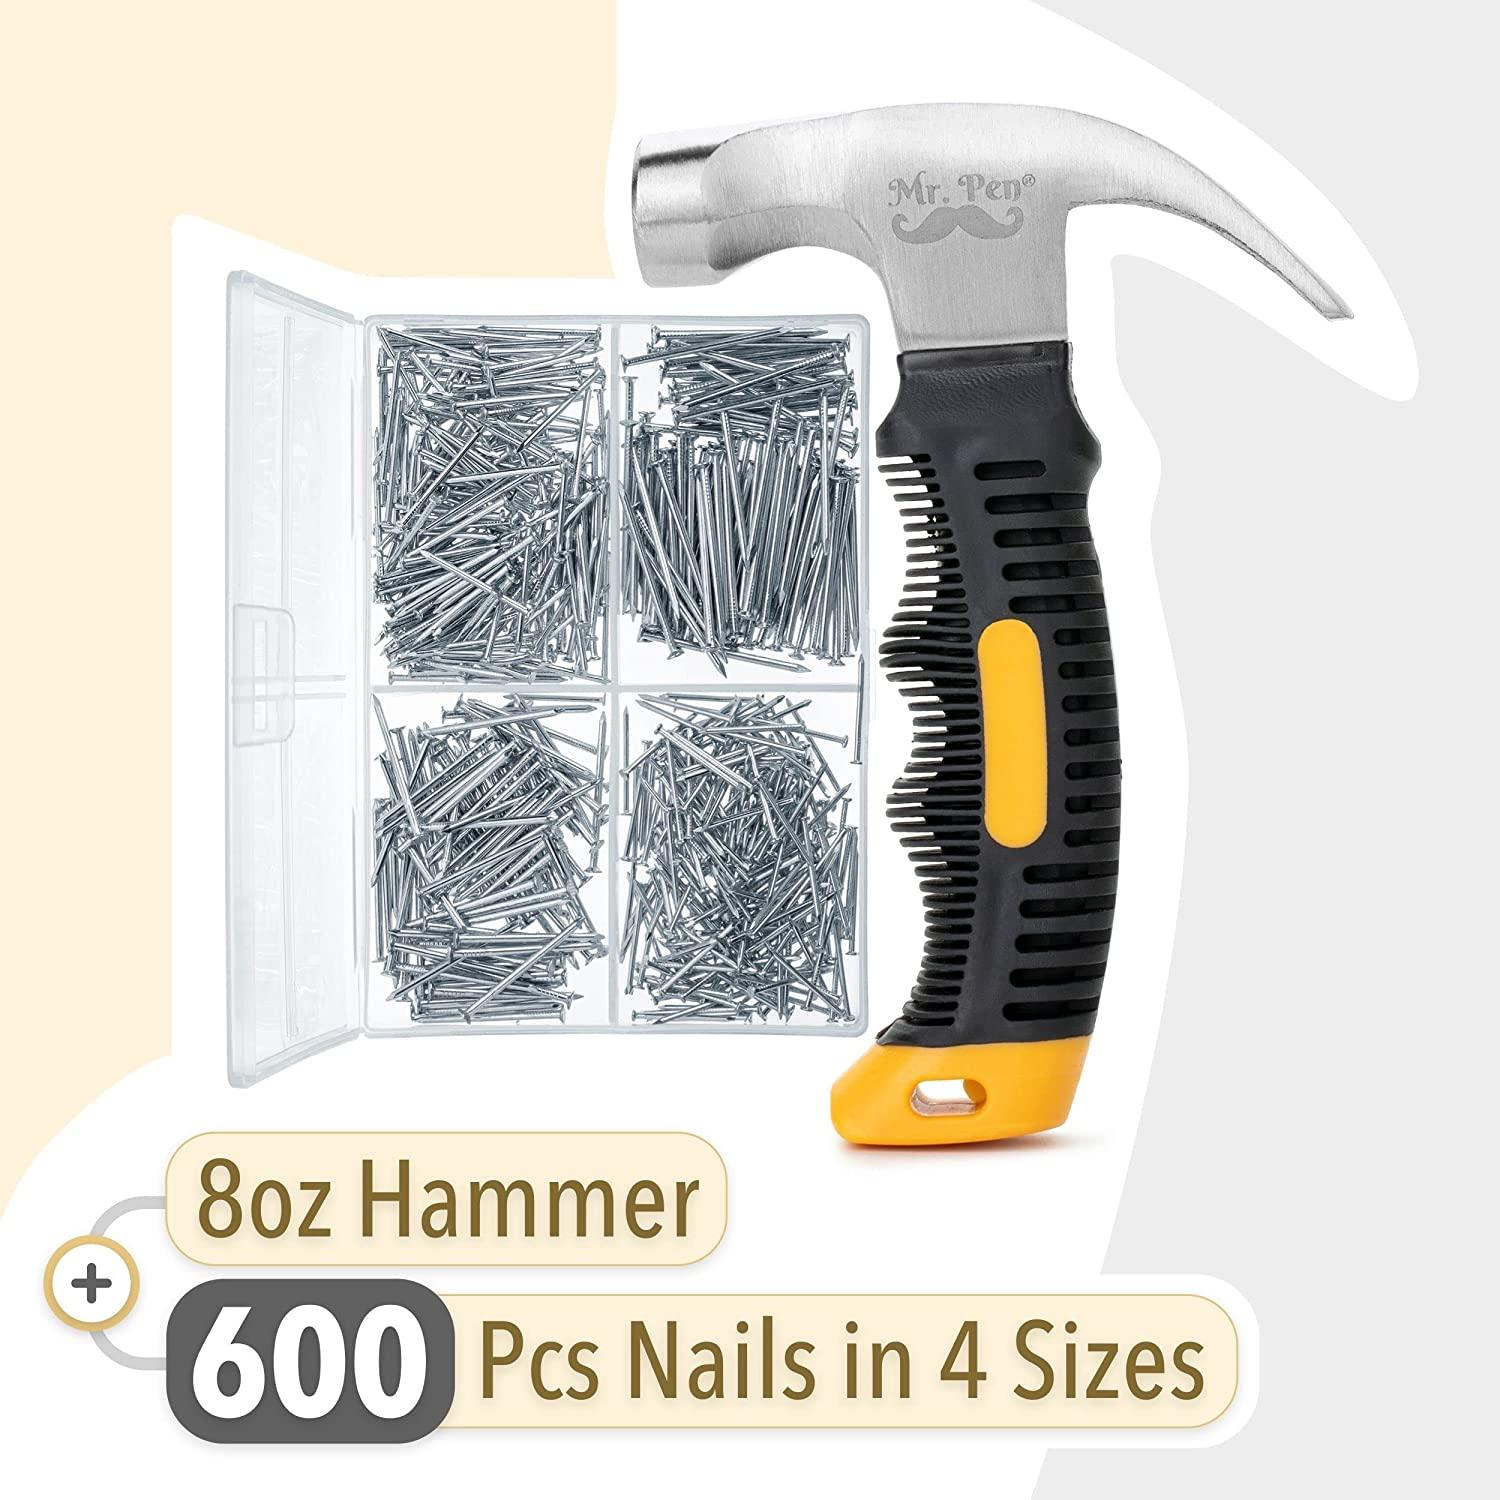 Mr. Pen- Nail Assortment Kit and 8oz Small Hammer, 600 Pcs Small Nails,  Wall Nails for Hanging, Hammer and Nails Set, Small Hammer for Picture  Hanging, Picture Hanging Kit, Picture Hanging Nails